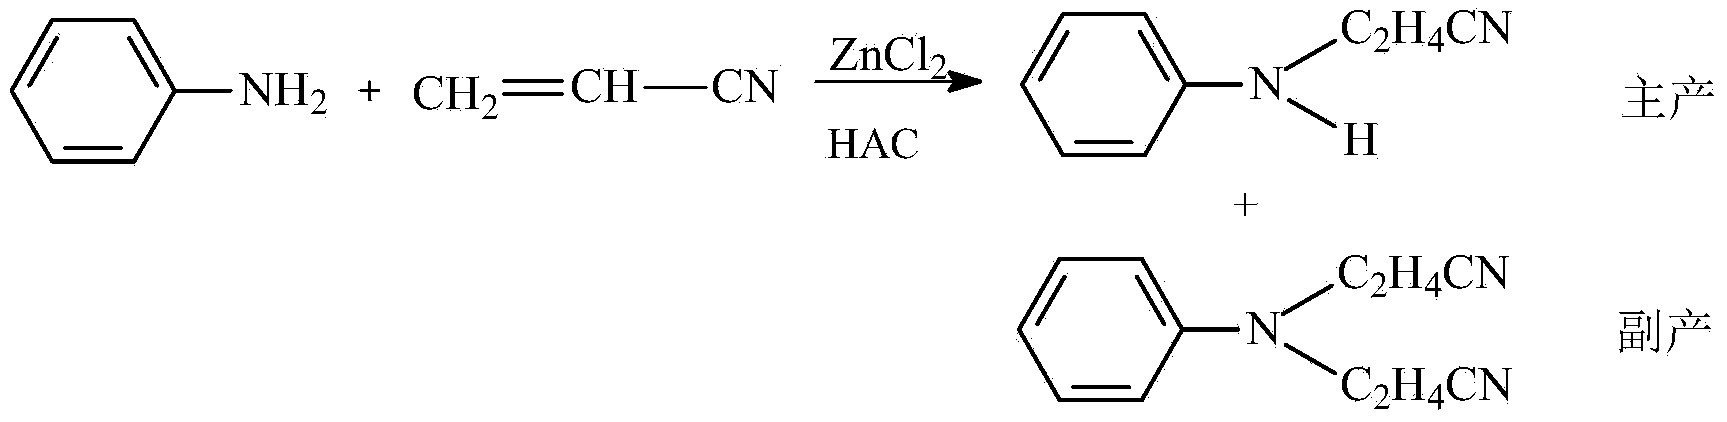 Method for producing N-cyanoethylaniline and N,N-dicyanoethylaniline by adopting one-step cleaning process